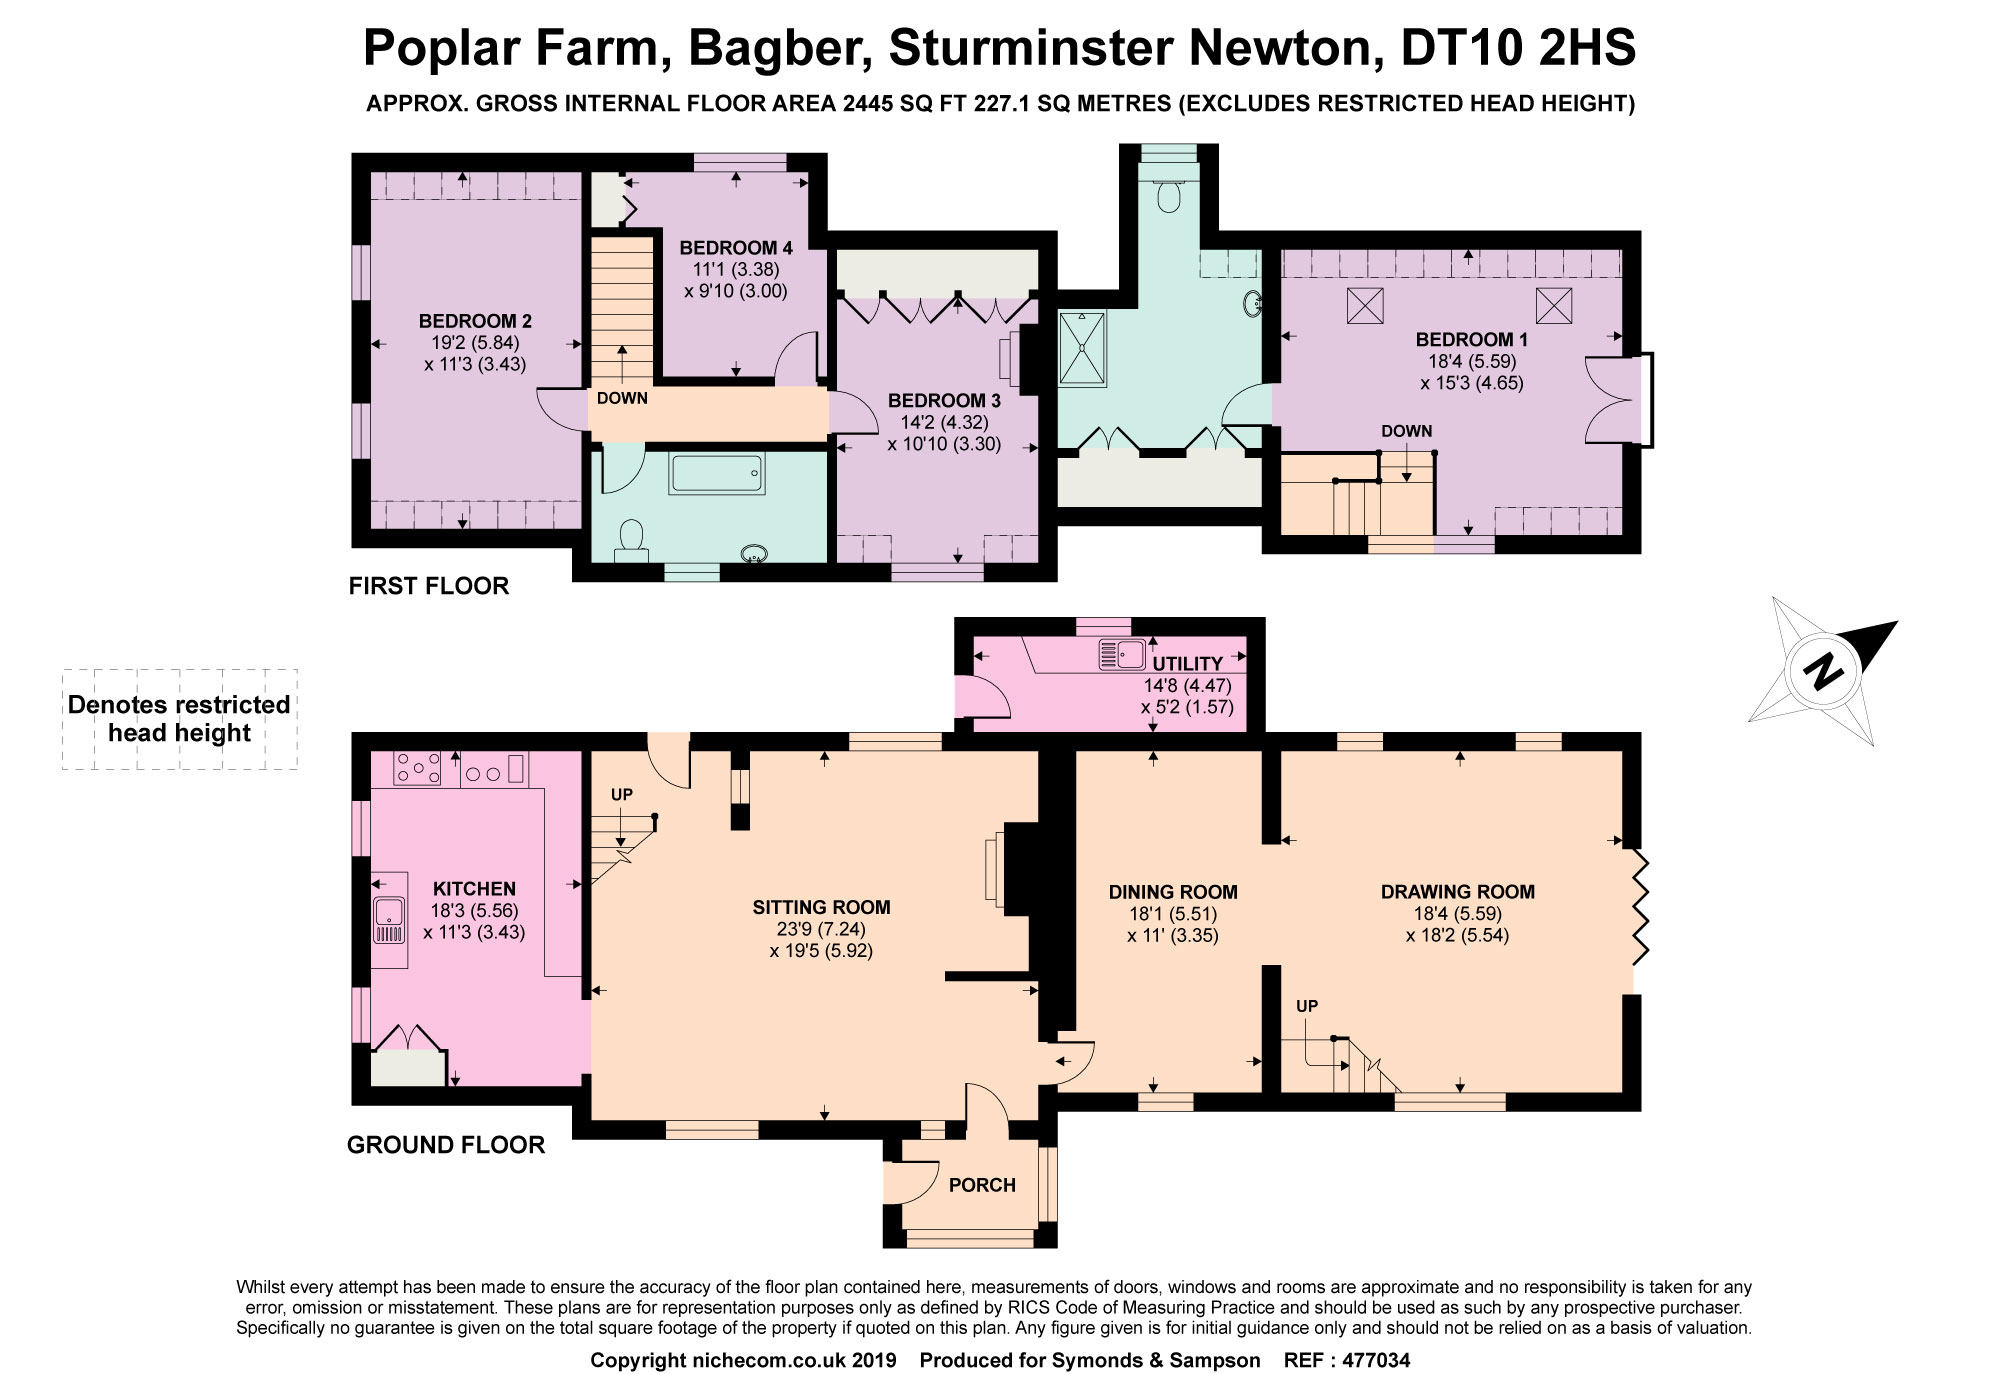 4 Bedrooms Detached house for sale in Bagber, Sturminster Newton, Dorset DT10